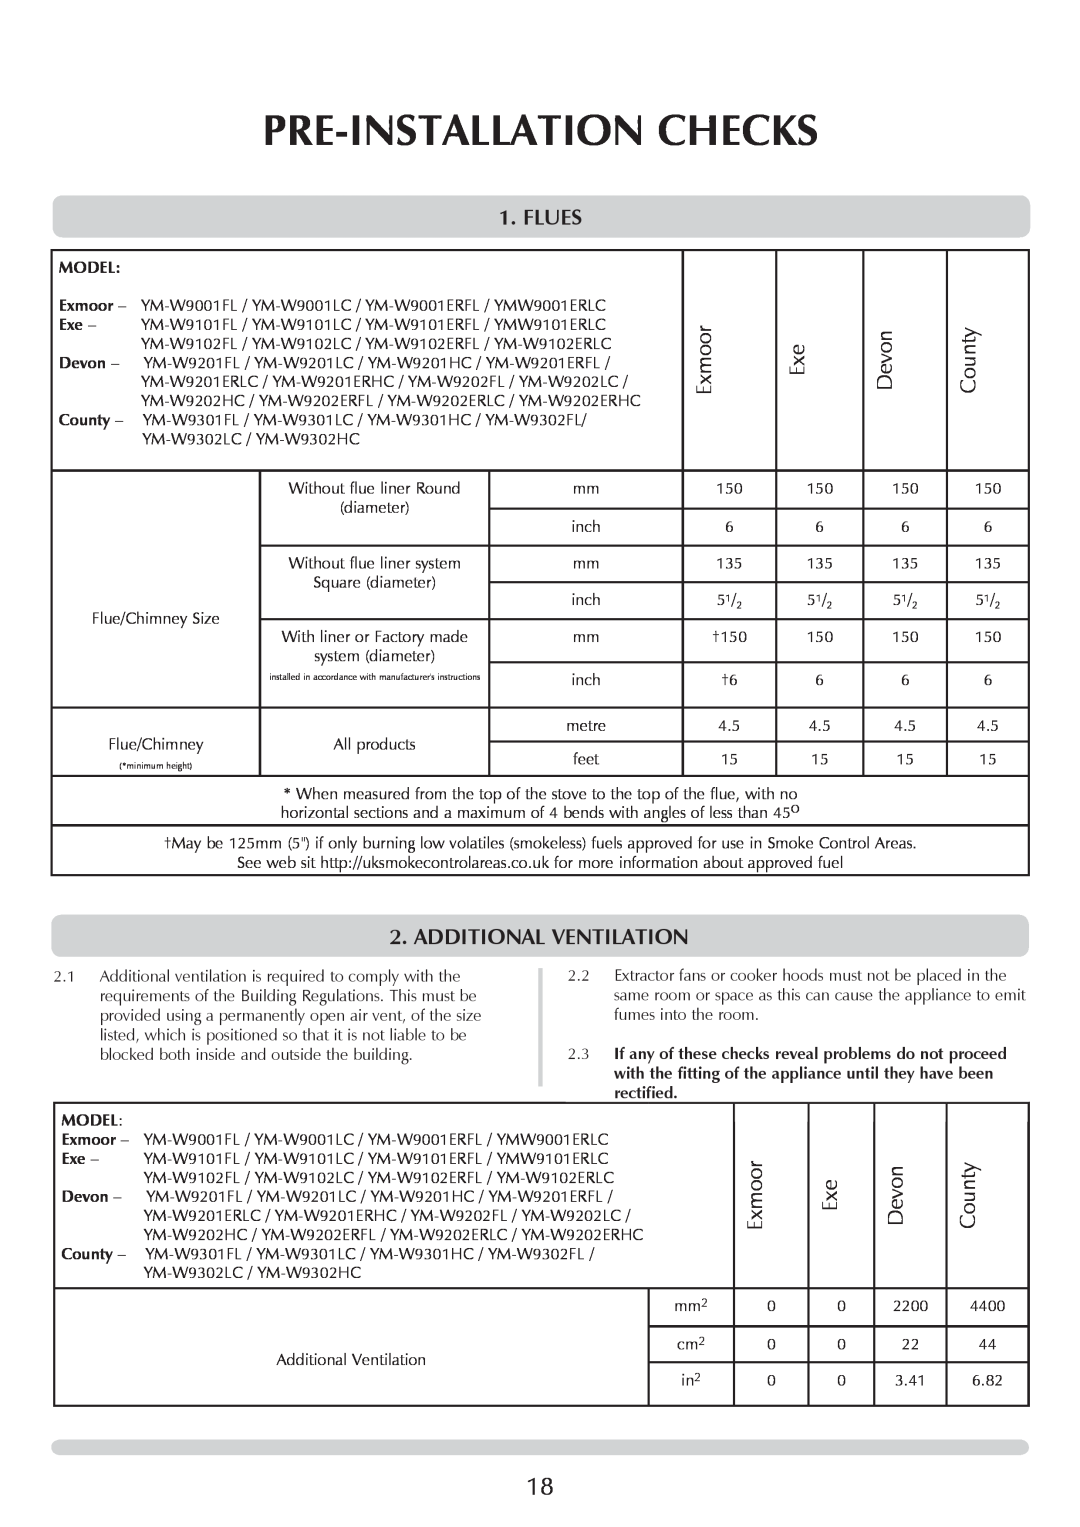 Yeoman YM-W9001FL manual Pre-Installation Checks, Flues, Additional Ventilation, Exmoor, Devon, County, Model 